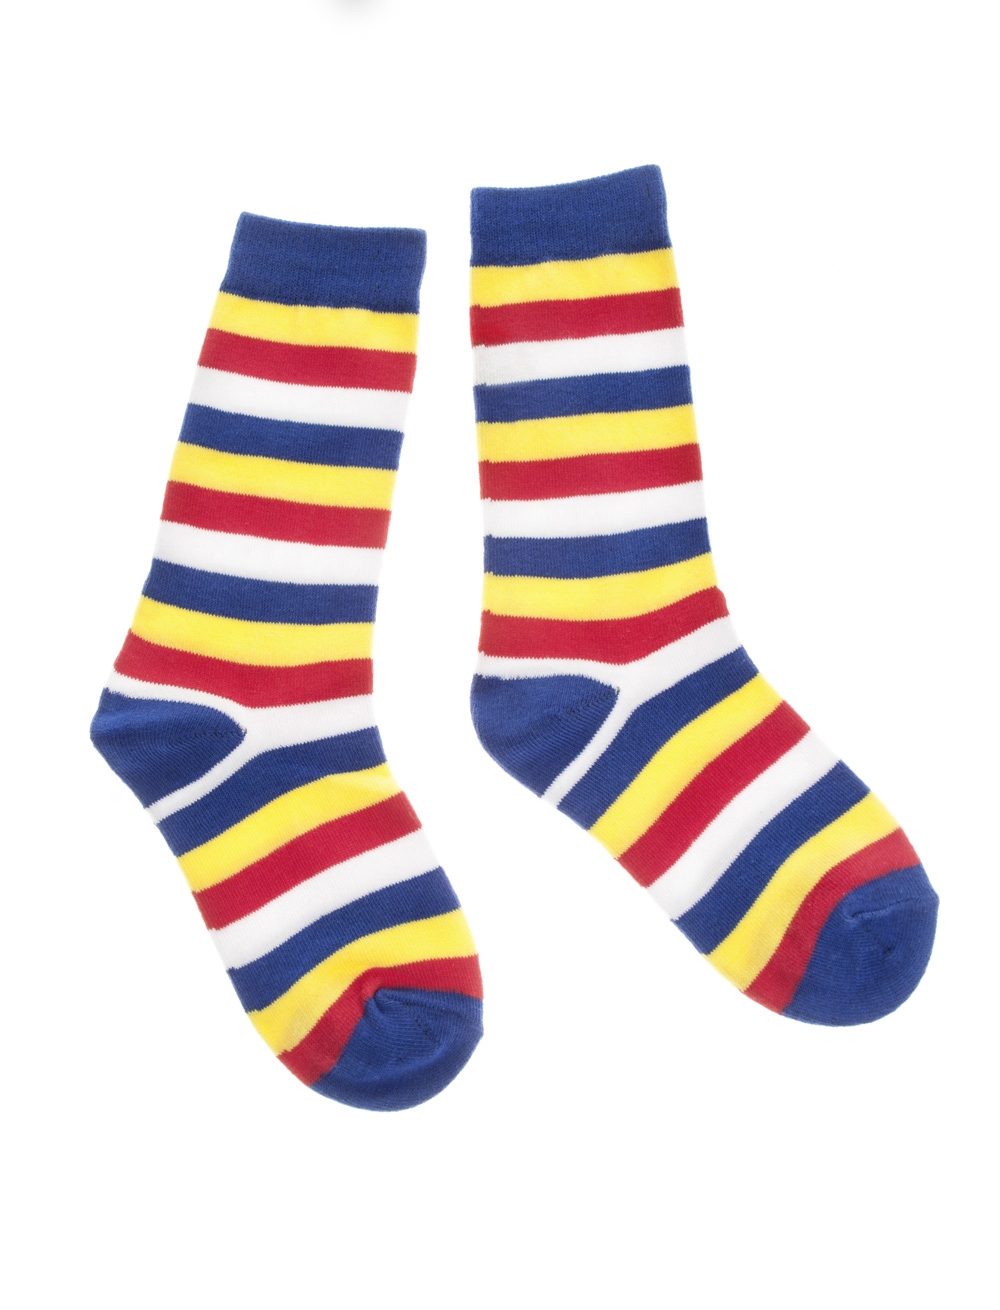 Socken gestreift rot/weiß/blau/gelb 35-40